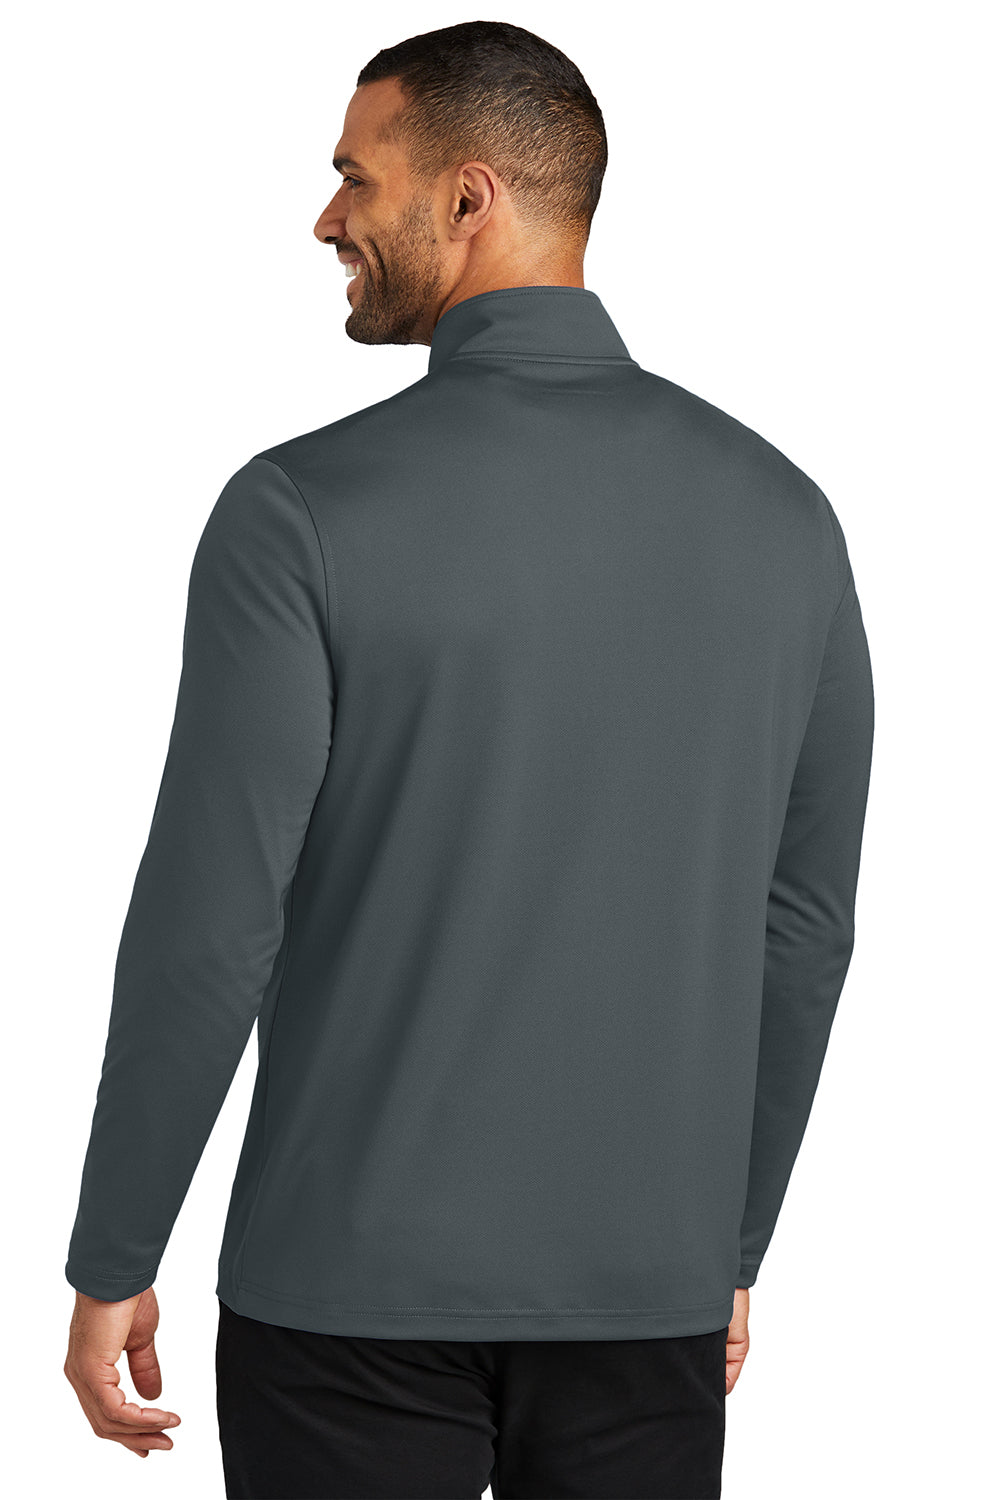 Port Authority K112 Mens Dry Zone UV Micro Mesh 1/4 Zip Sweatshirt Graphite Grey Back